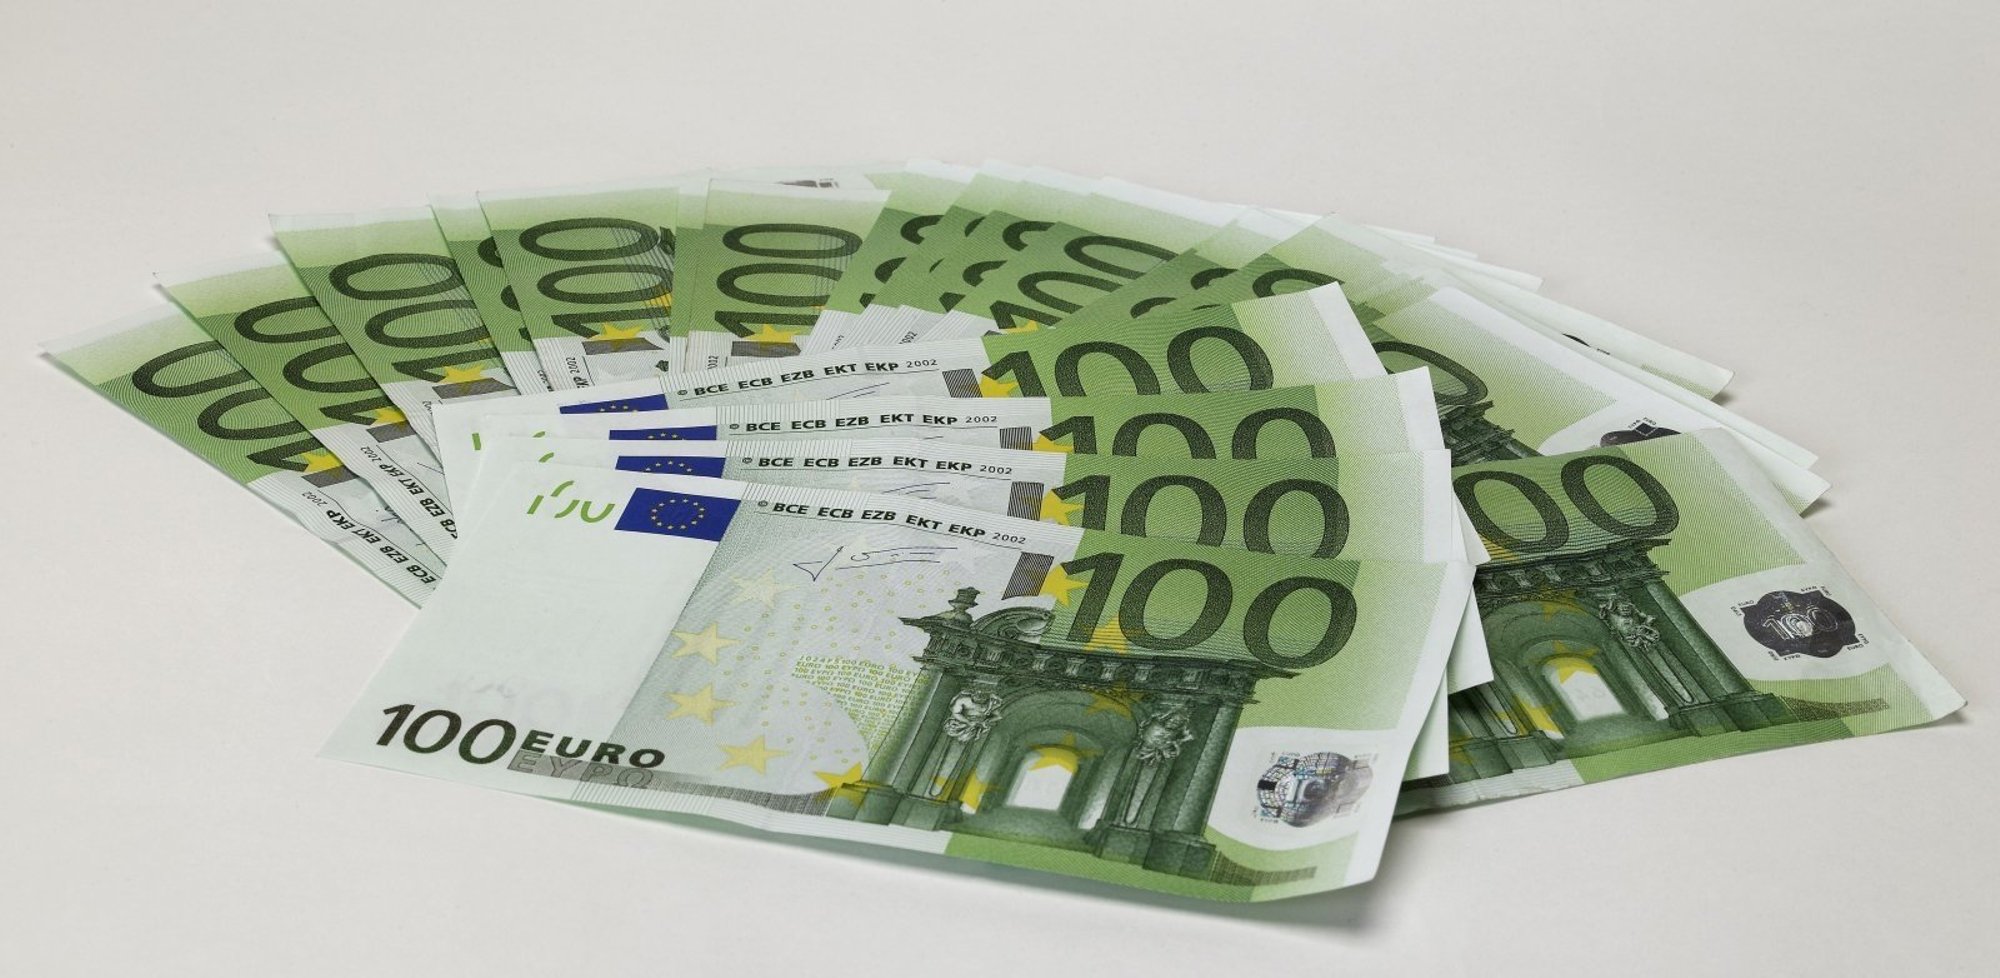 Евро купюры 100 евро. Как выглядит 100 евро купюра. Как выглядит банкнота 100 евро. Купюра 100 евро настоящая.